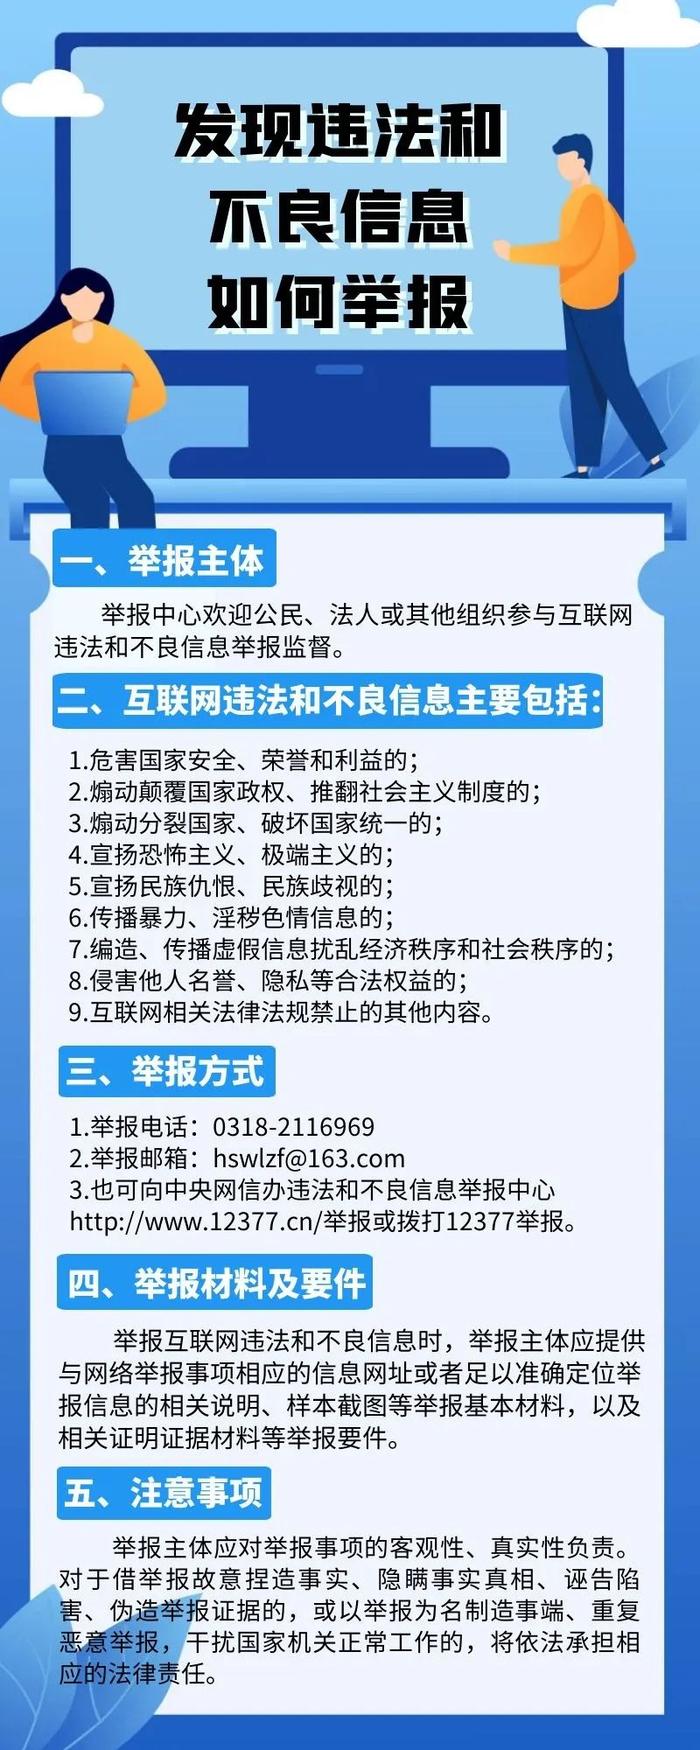 河北省衡水市互联网违法和不良信息举报中心挂牌成立